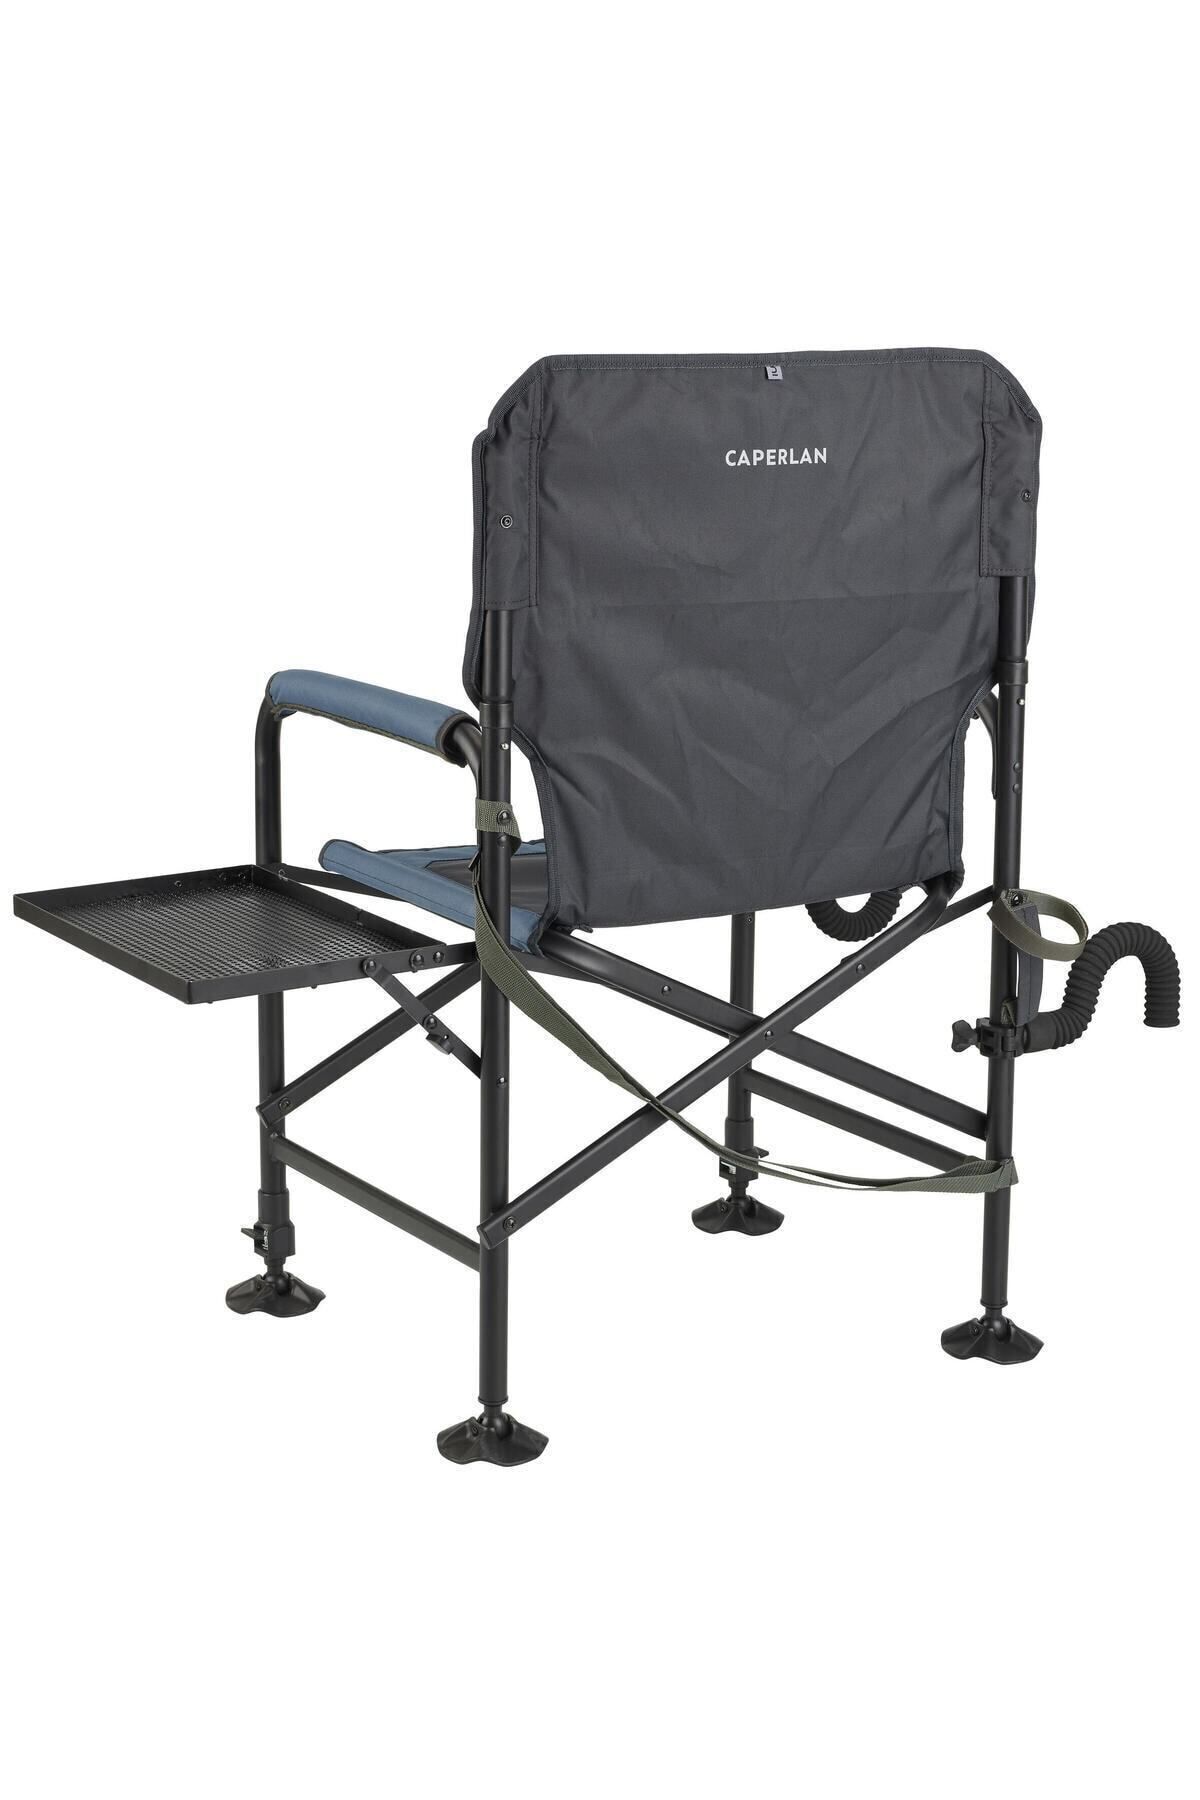 Decathlon Caperlan Sehpalı Katlanır Kamp Sandalyesi - Balıkçılık - Essenseat 500 Adjust 334474